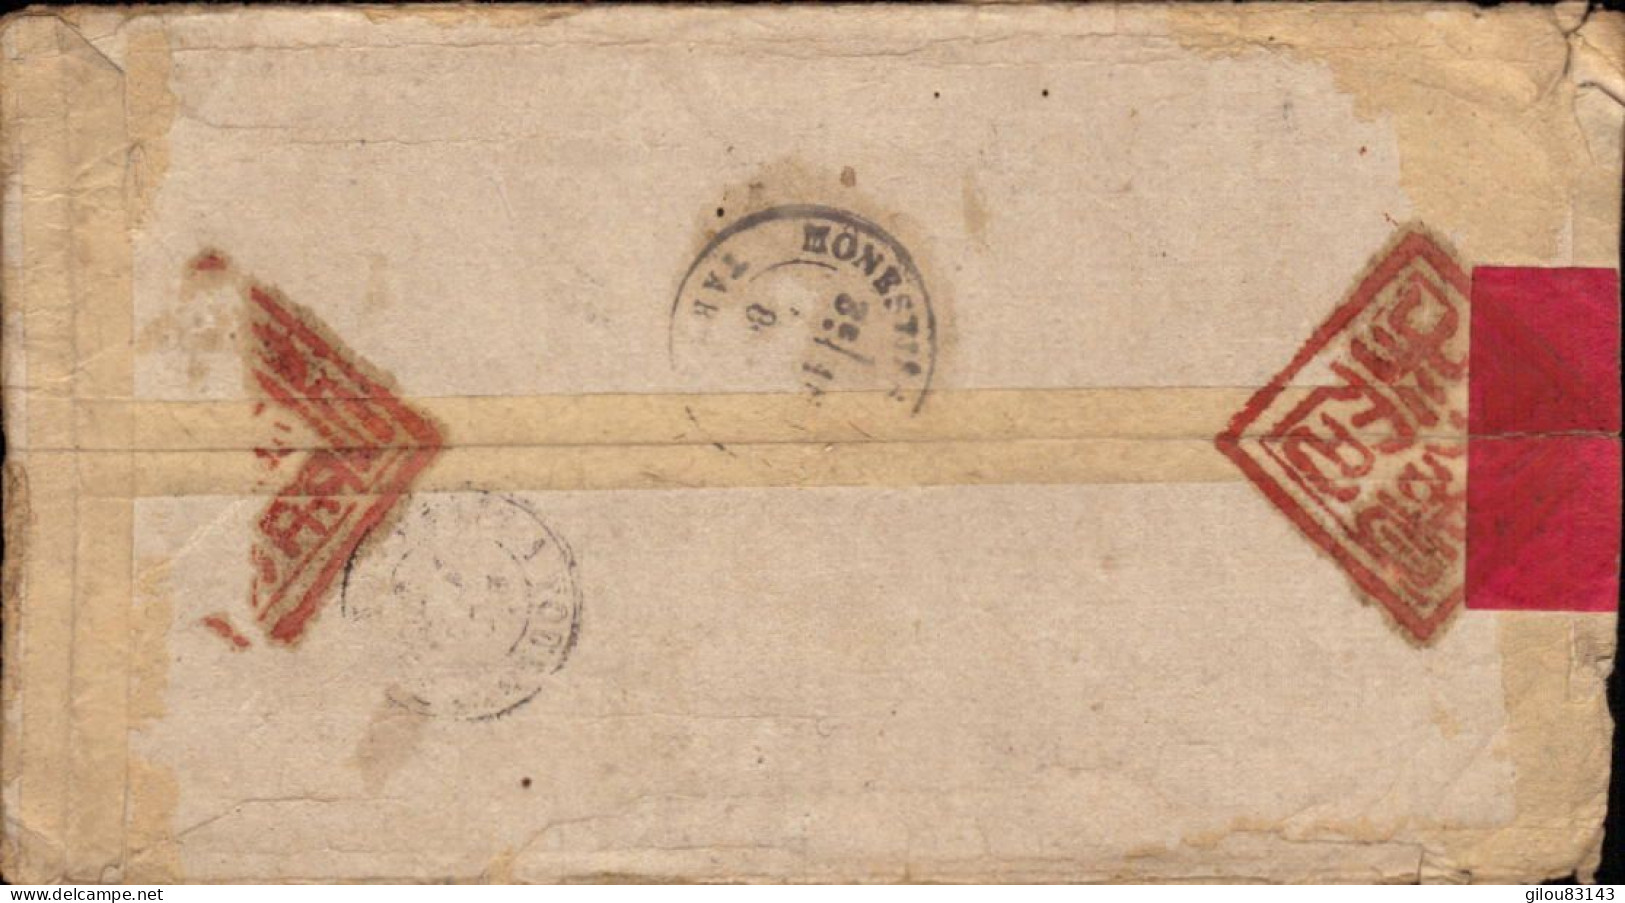 Lettre De Chine, Su-Tchuen Oriental Pour La France à Mr Le Curé De Virac Par Monestiés, Tarn, 1880 - Briefe U. Dokumente